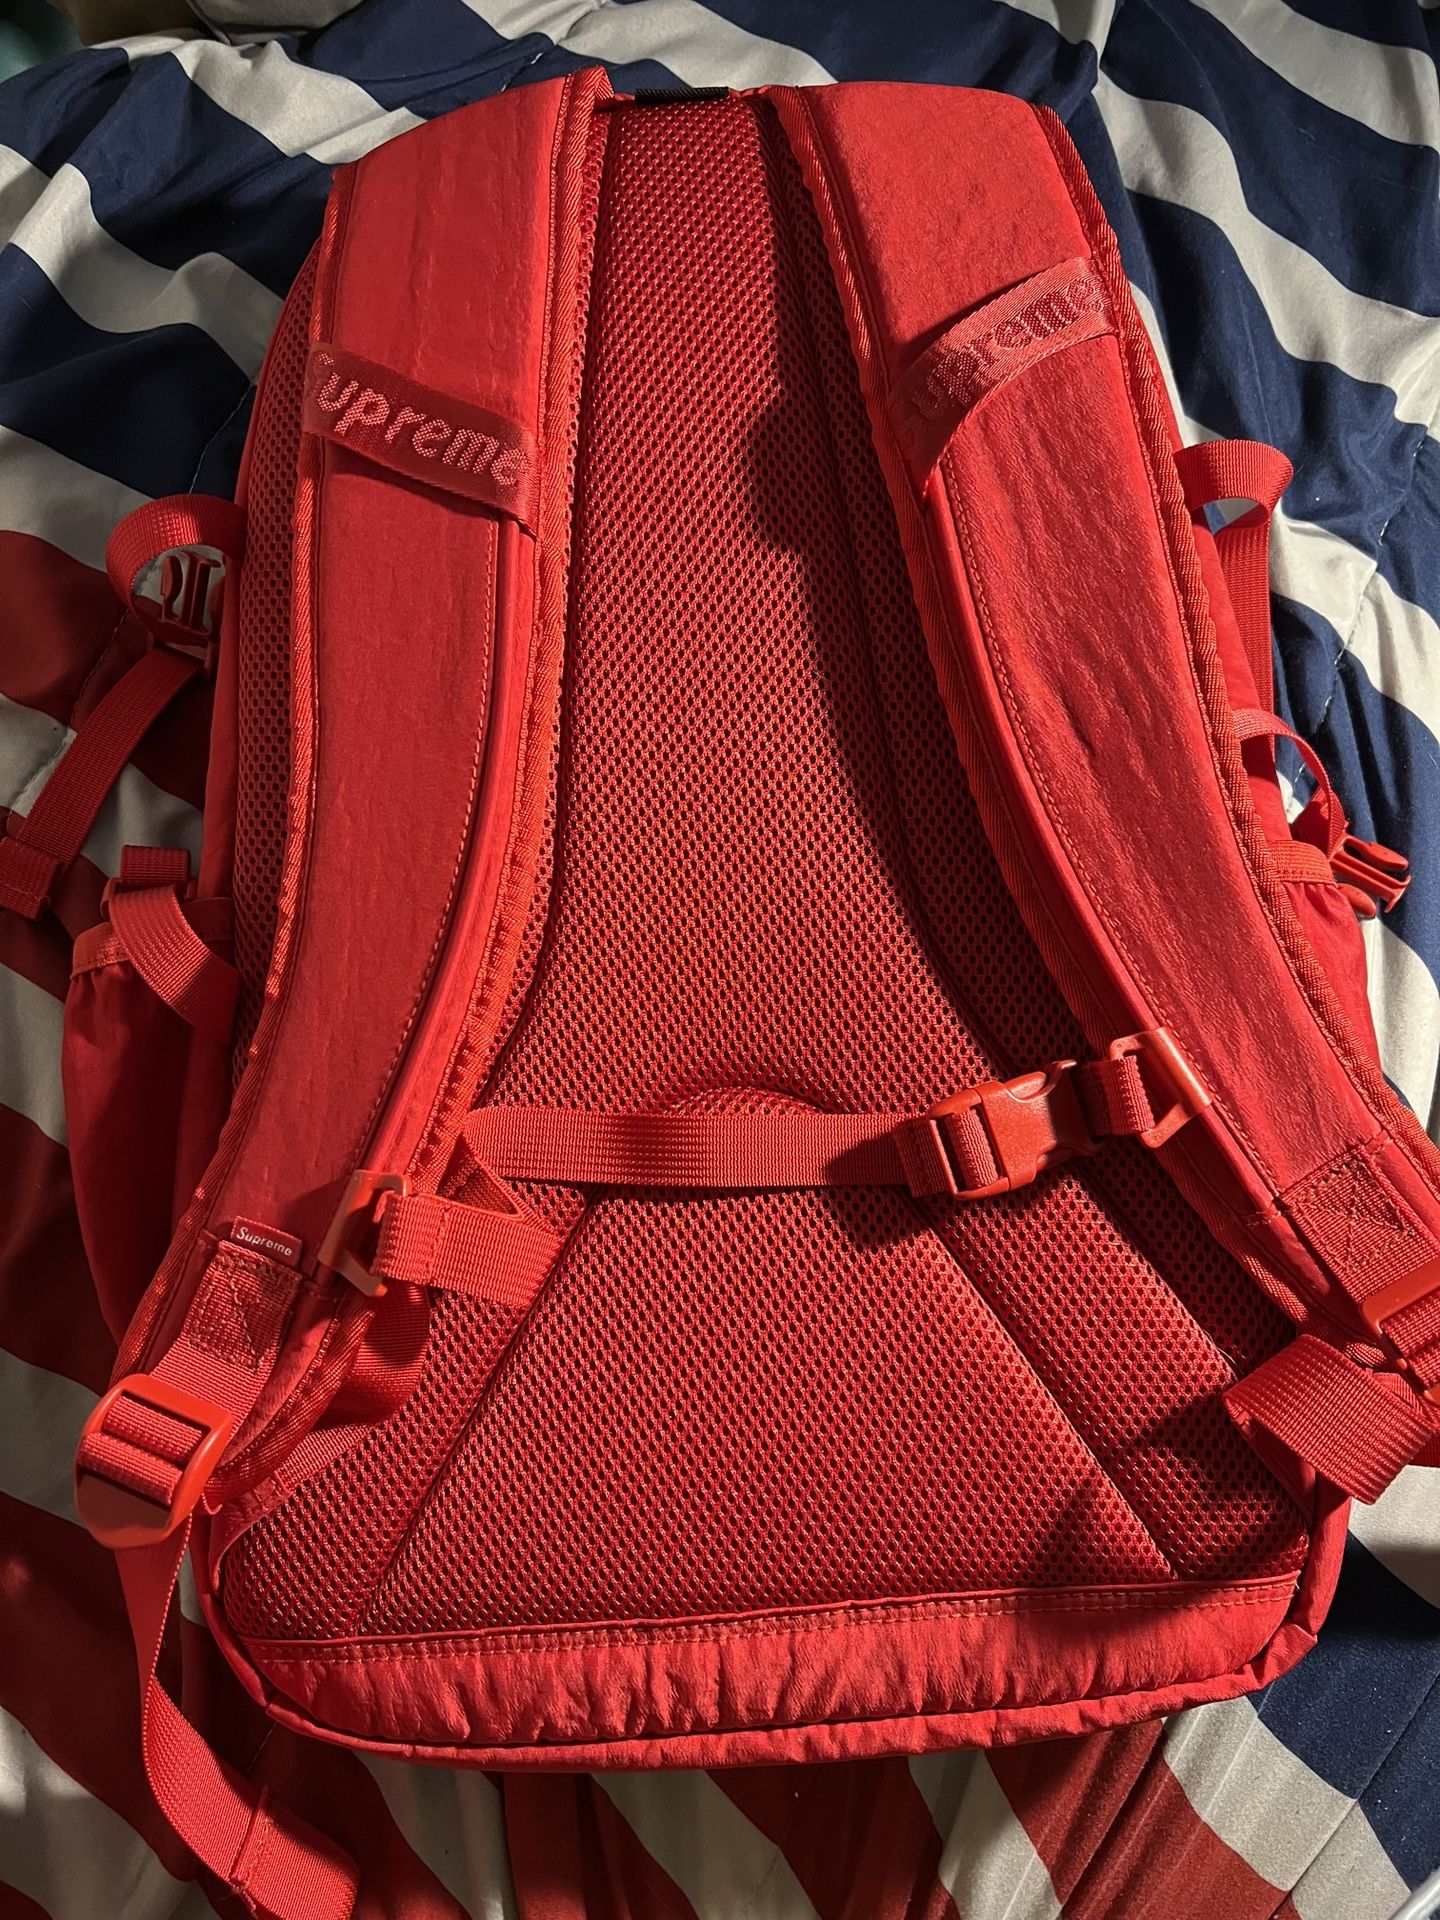 Supreme 2019 Box Logo Backpack - Red Backpacks, Bags - WSPME26712